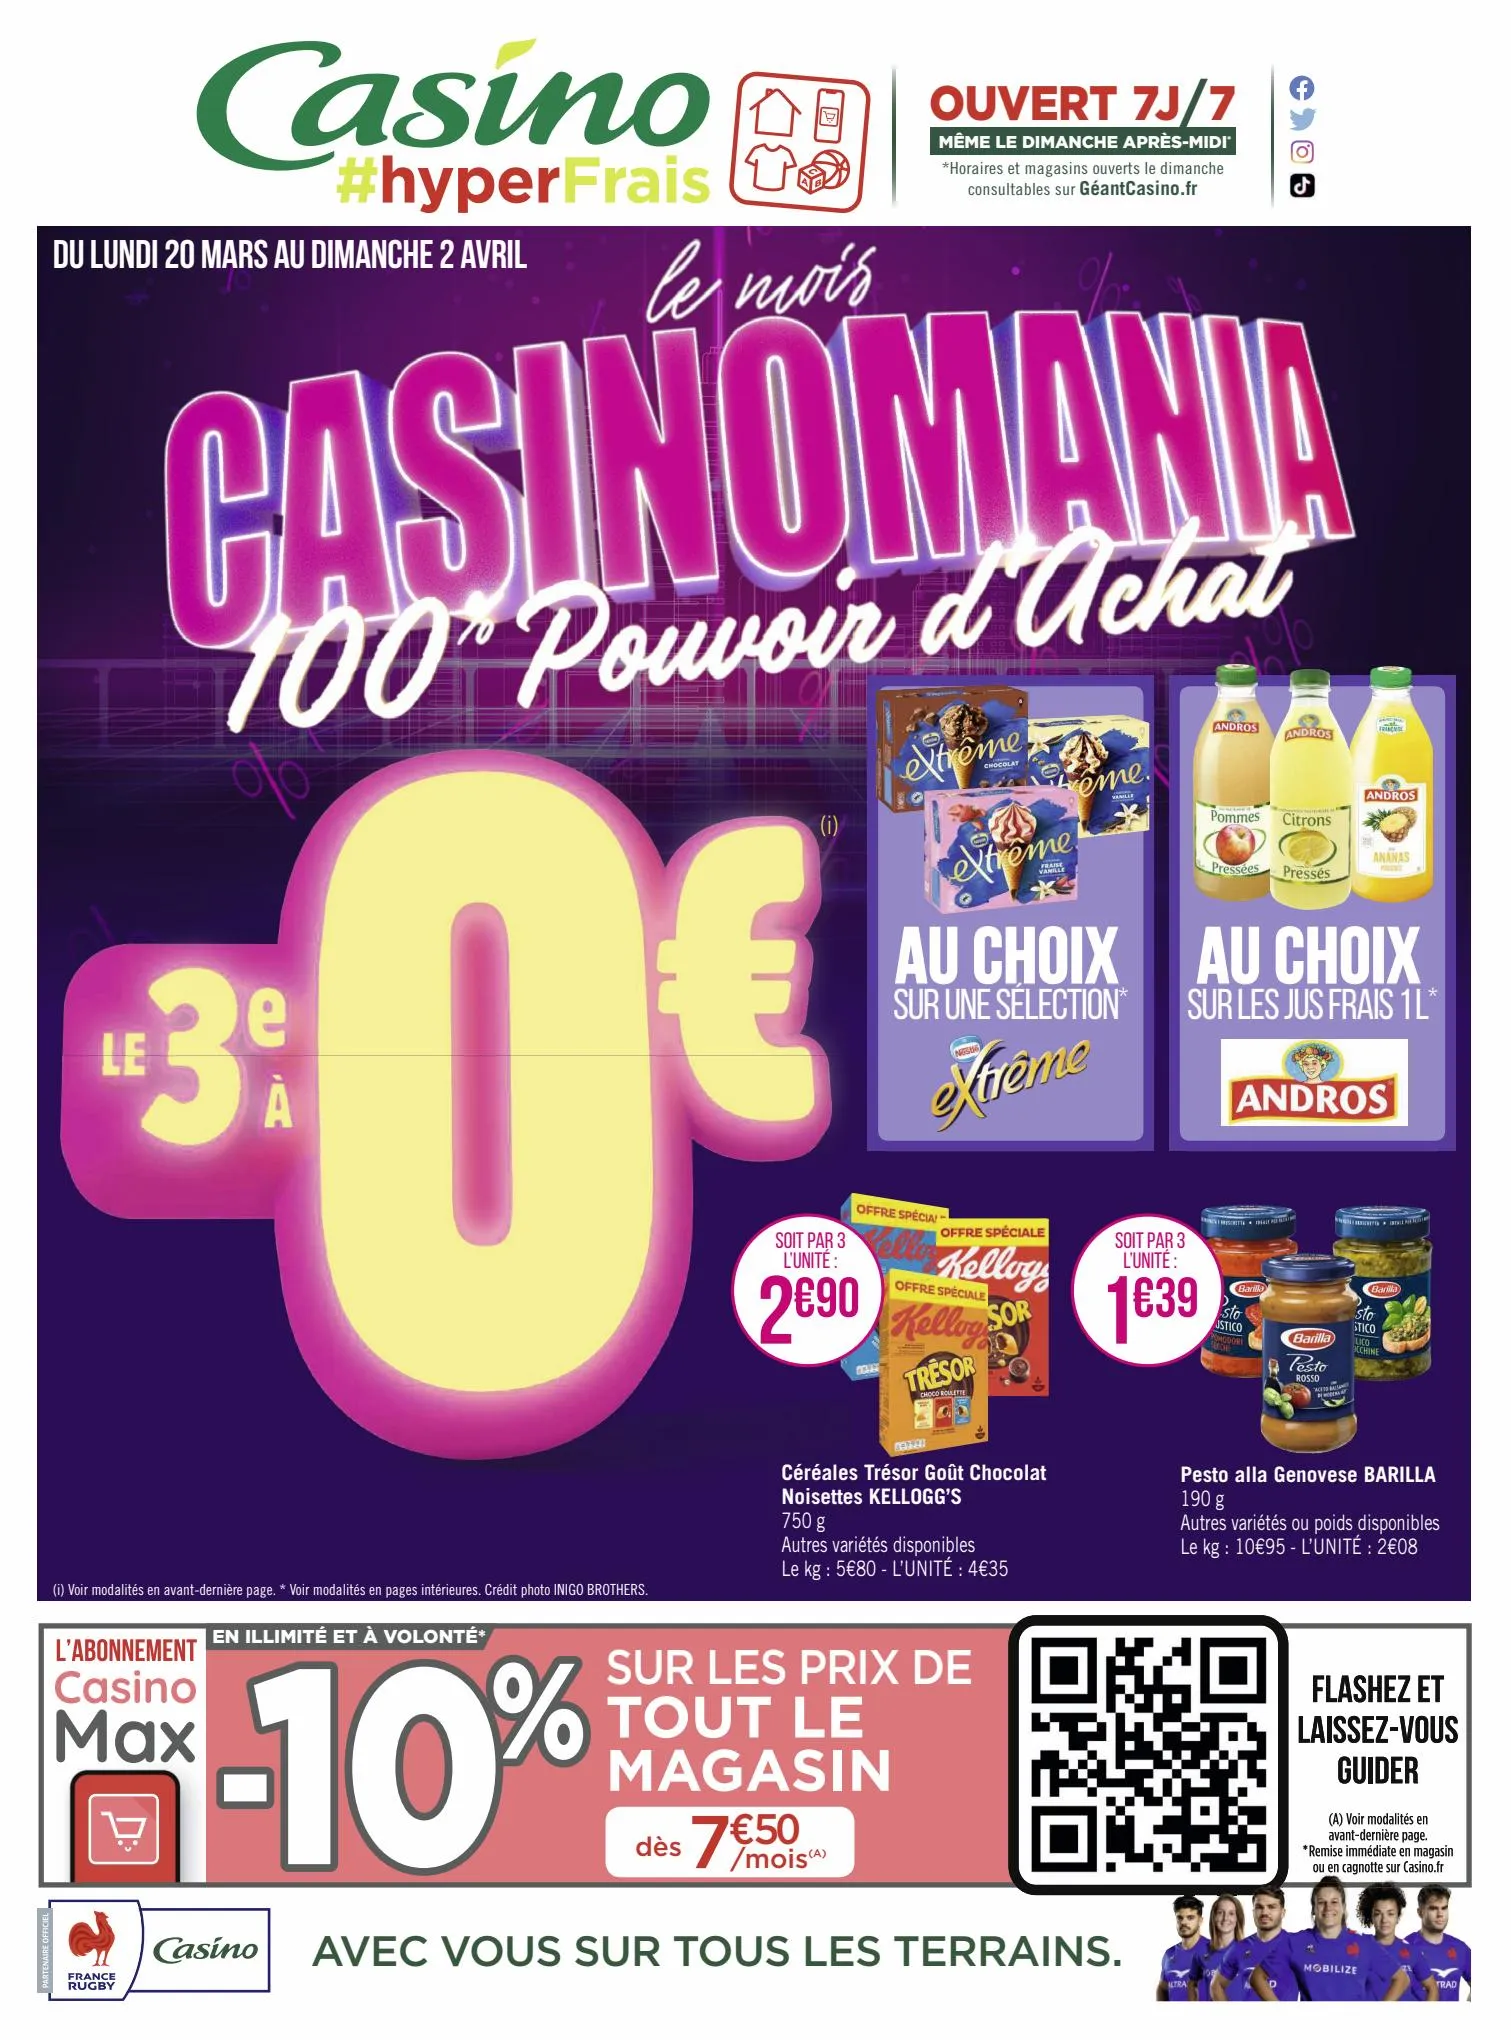 Catalogue le mois CASINOMANIA 100% Pouvoir d'Achat, page 00001